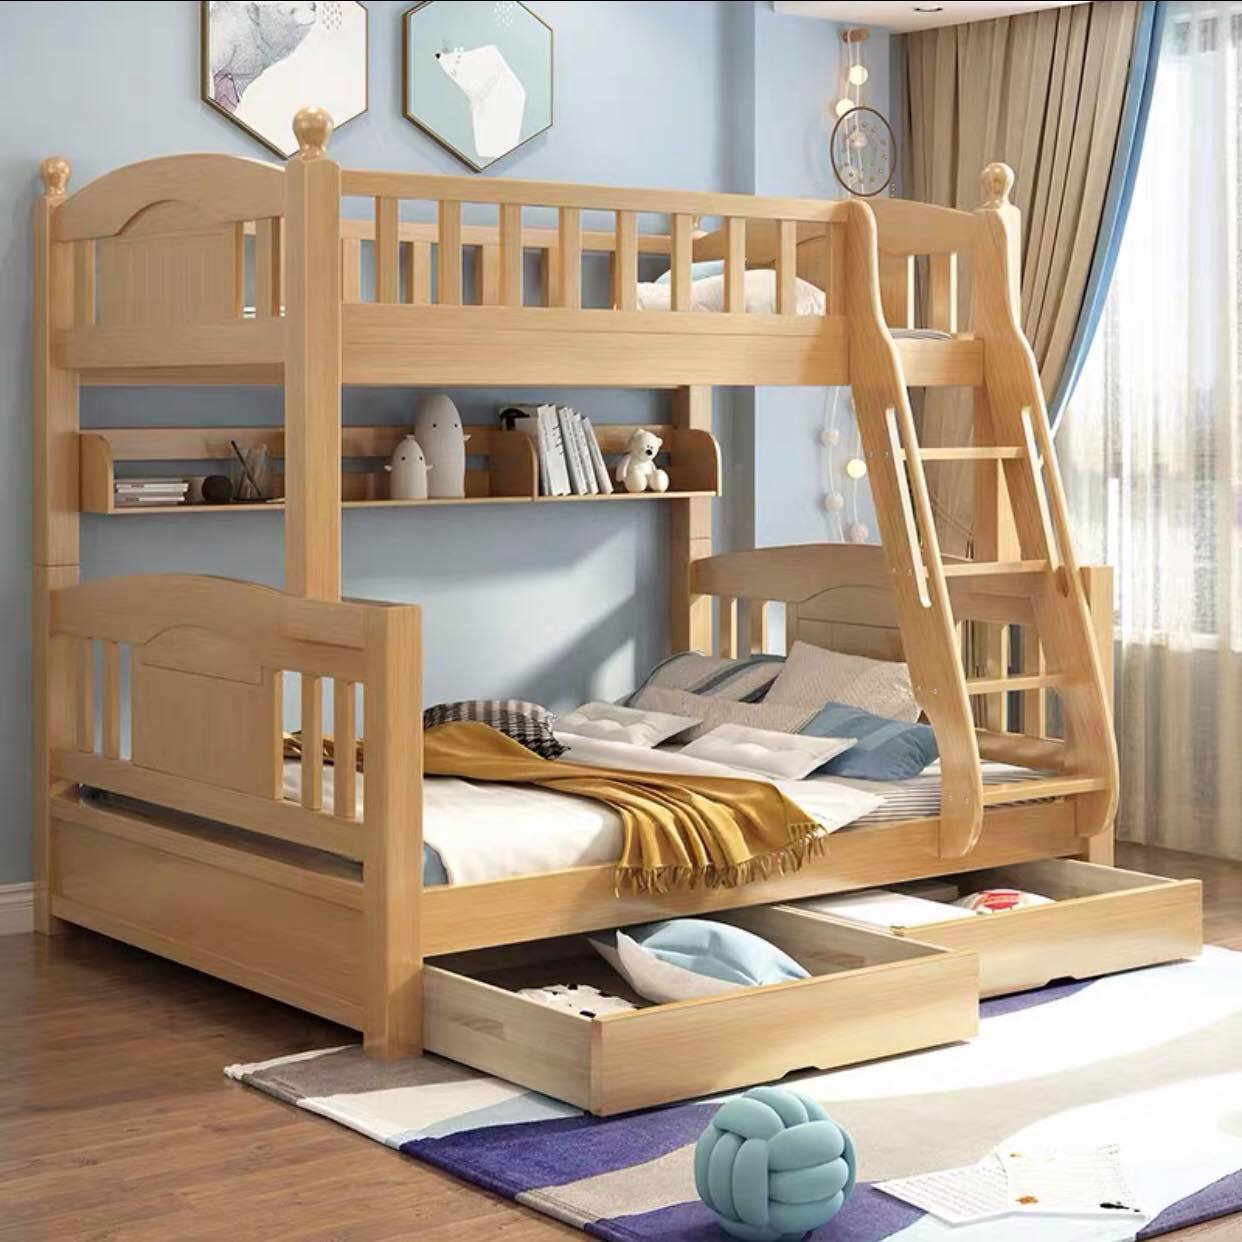 Mẫu giường tầng cho bé thiết kế nhiều ngăn kéo tiện ích 